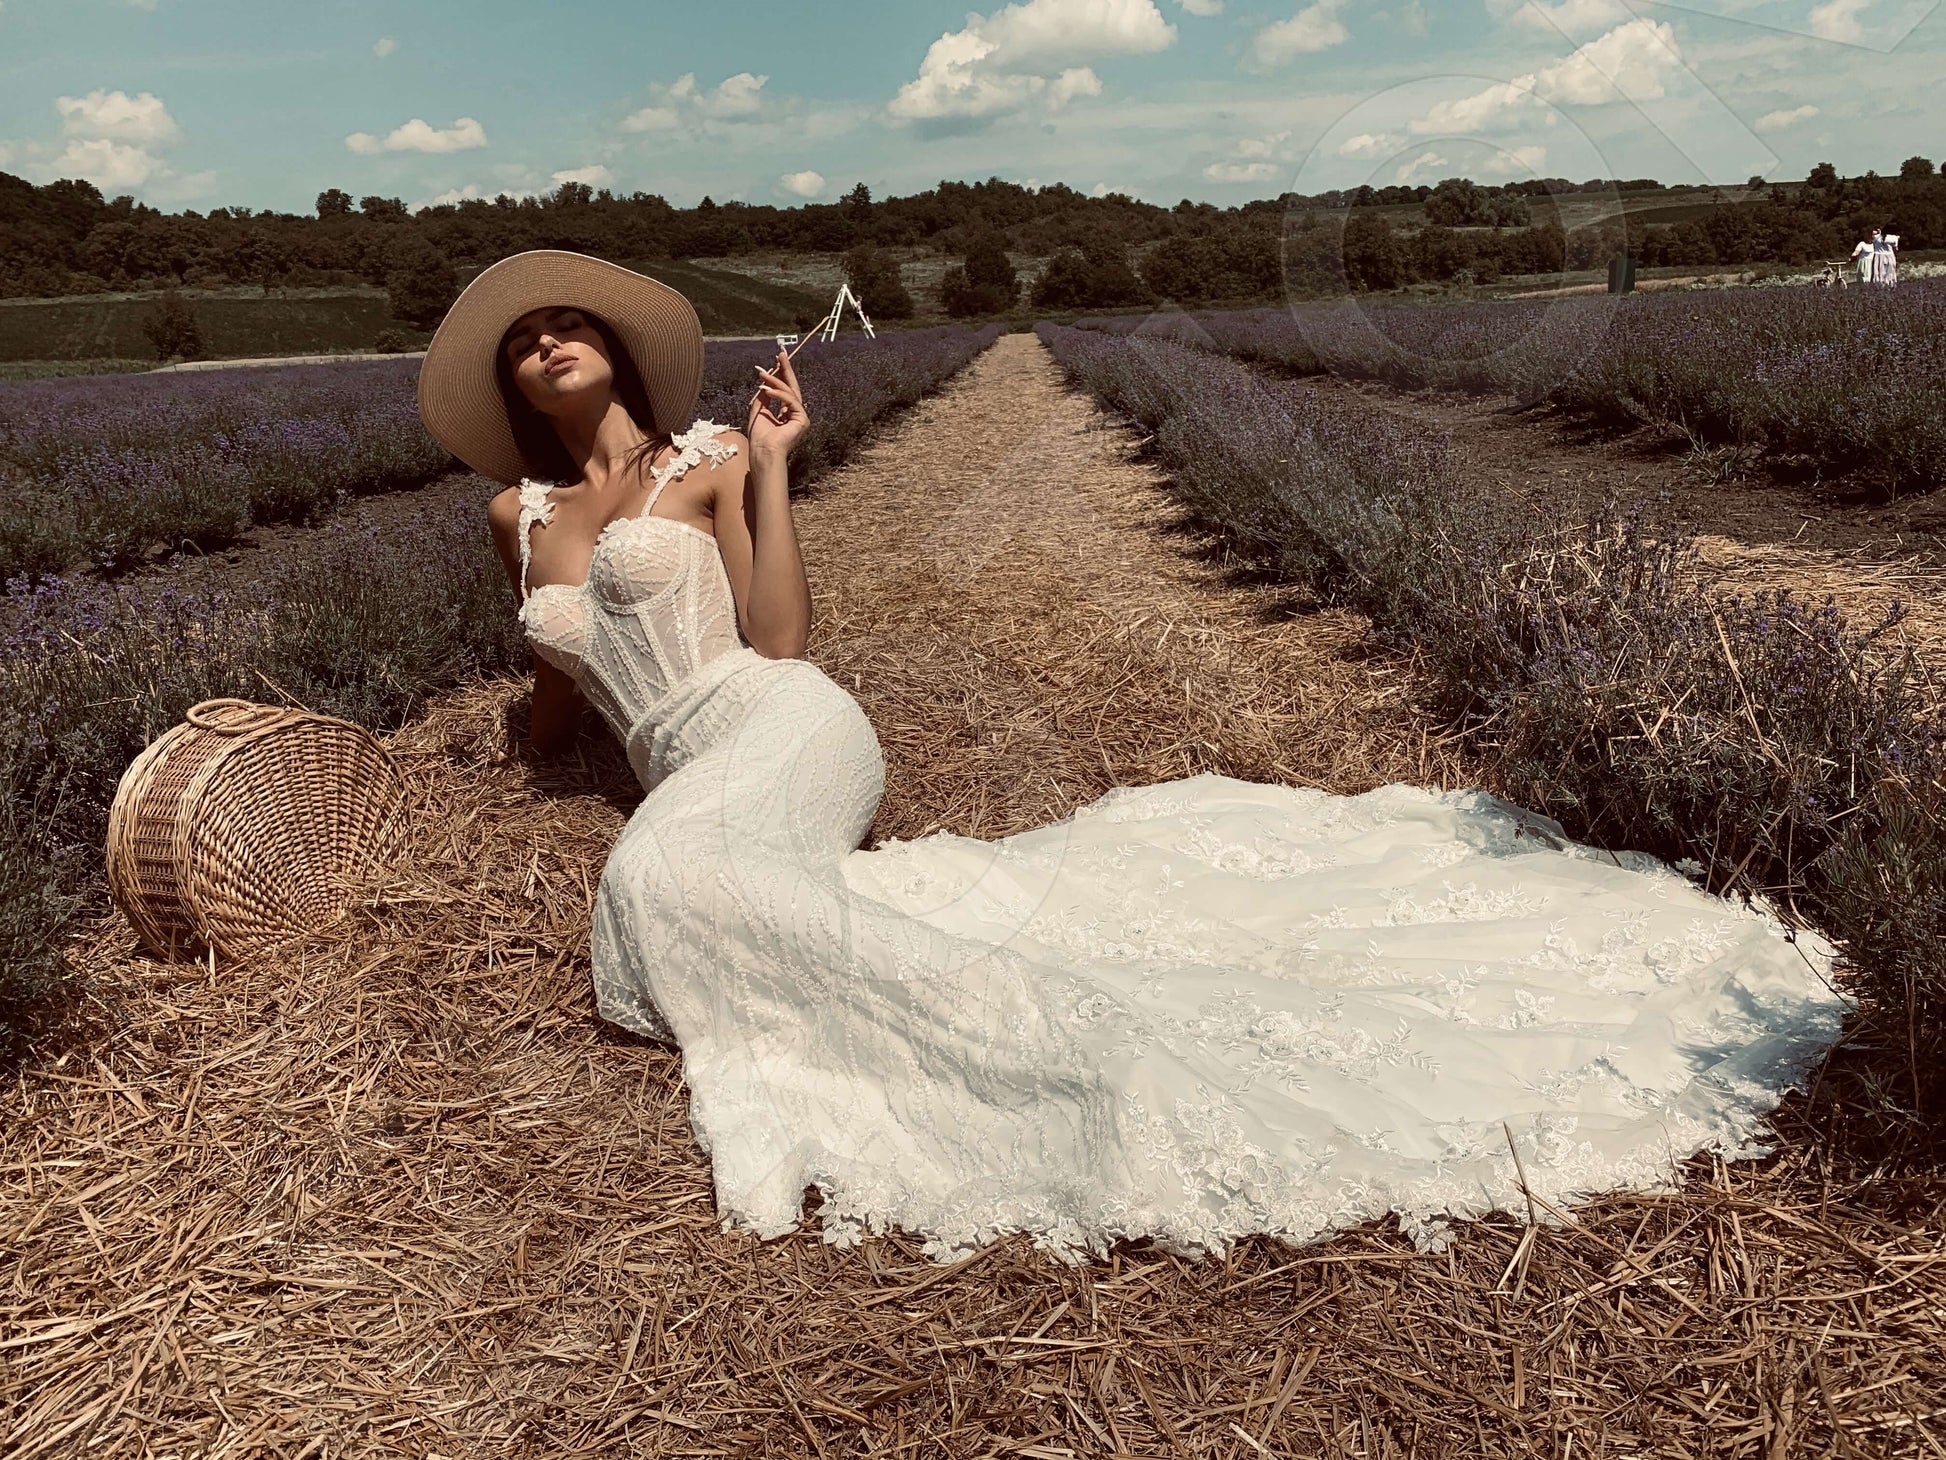 Valerie Trumpet/Mermaid Sweetheart Ivory Wedding dress